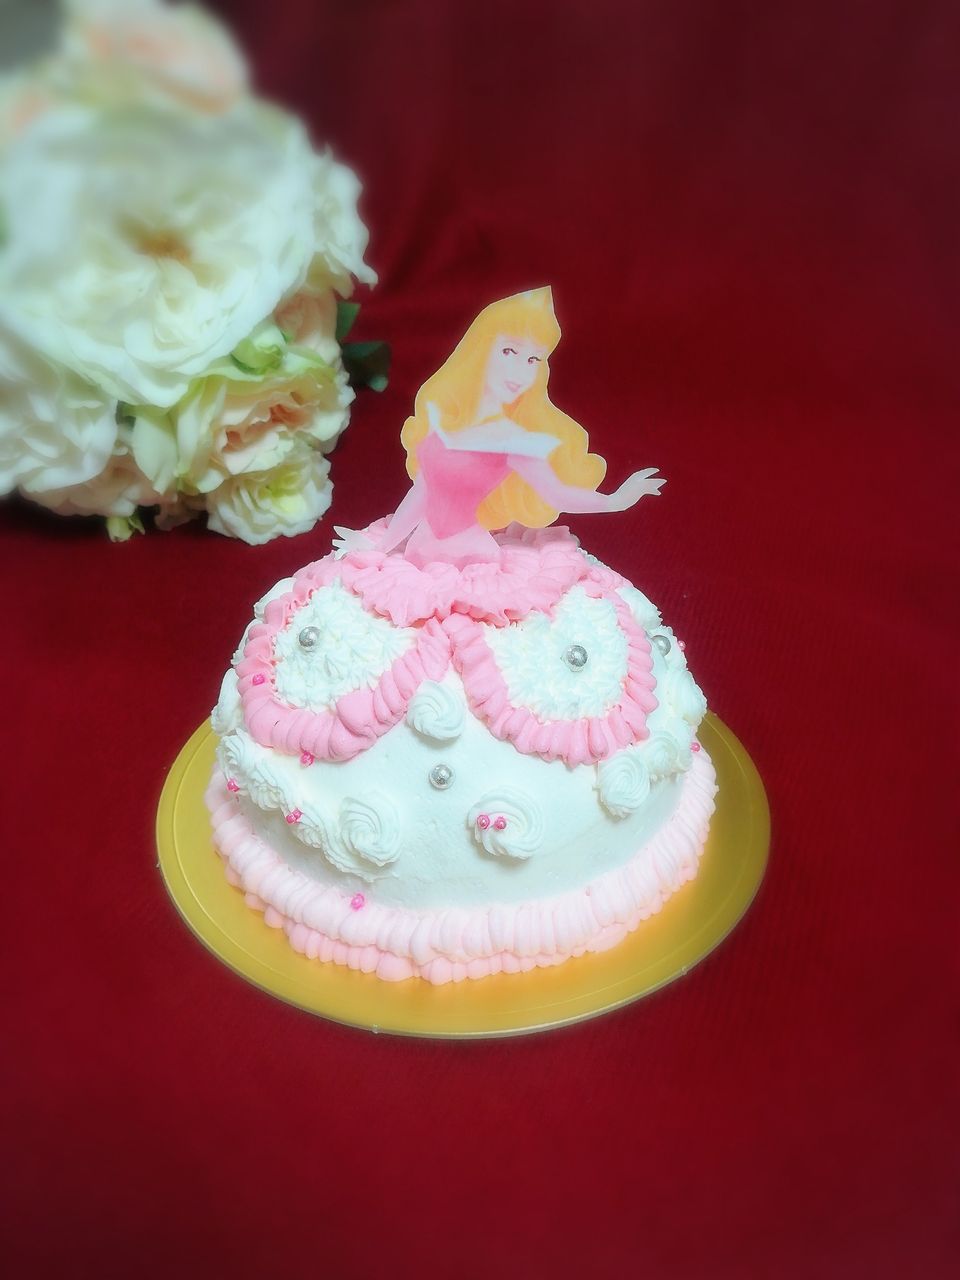 オーロラ姫のドールケーキ ほんとうのおいしい を探すケーキ教室 三輪菓子研究所